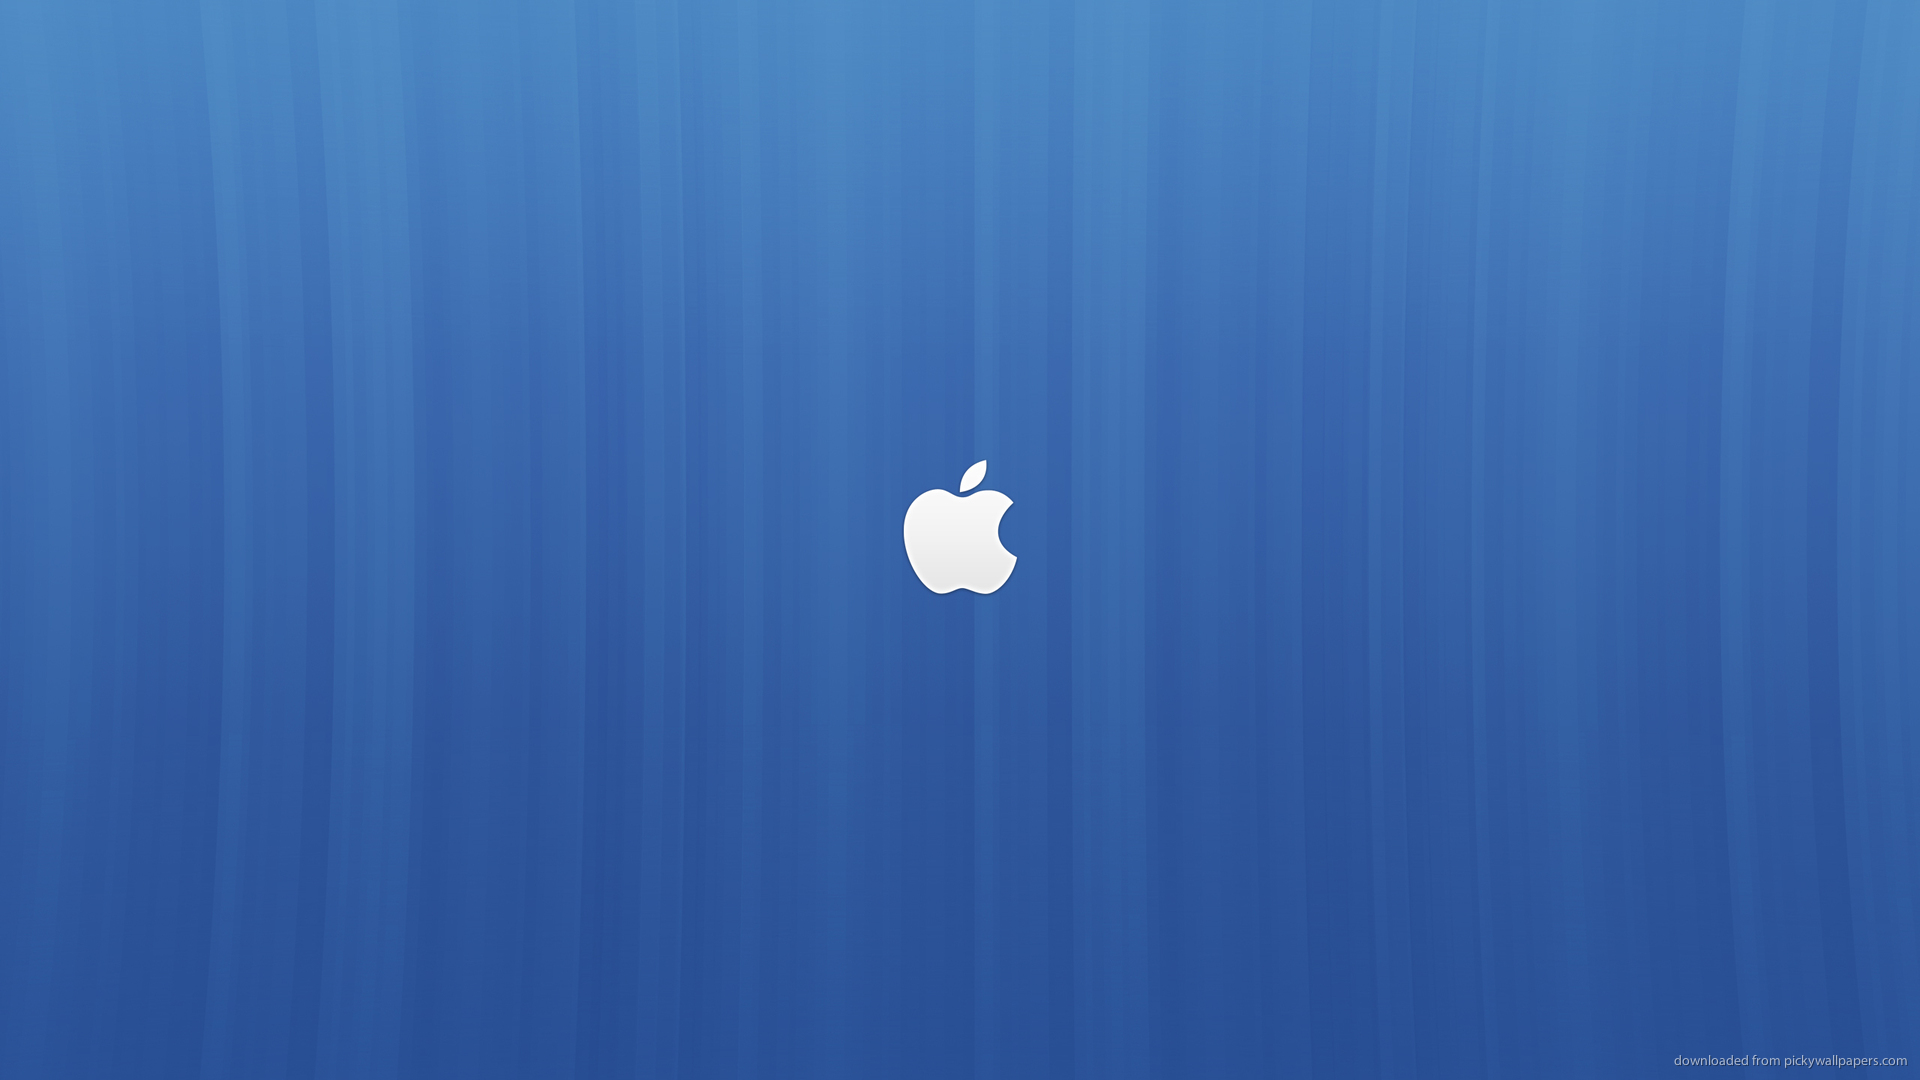 73+] Blue Apple Wallpaper - WallpaperSafari